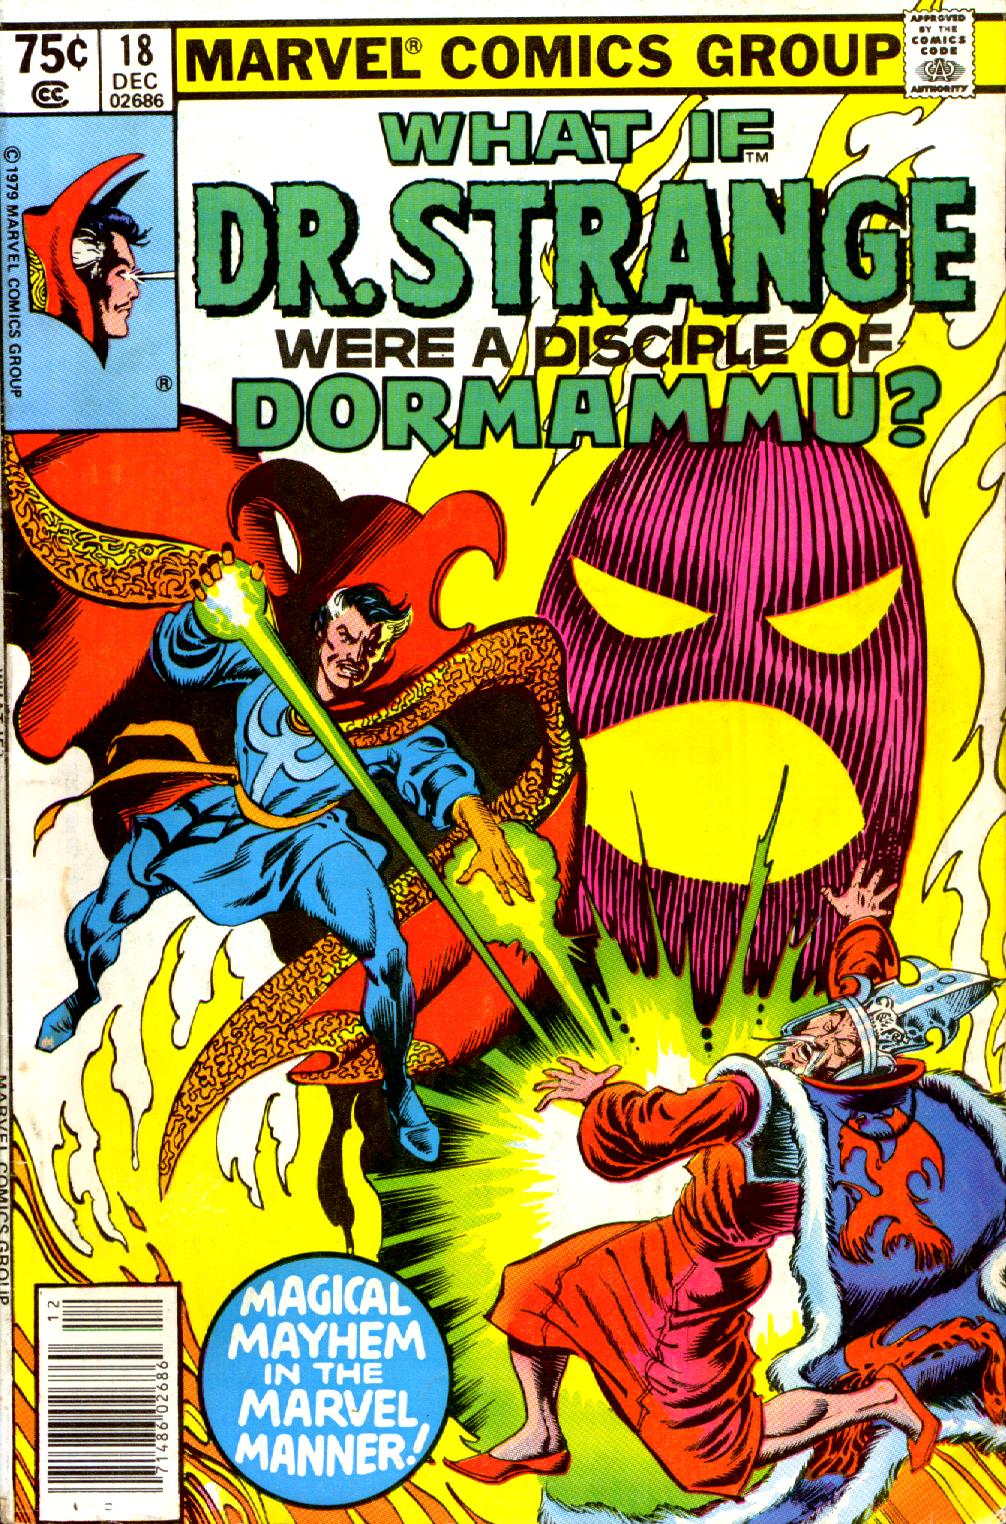 Dr Strange were a disciple of Dormammu